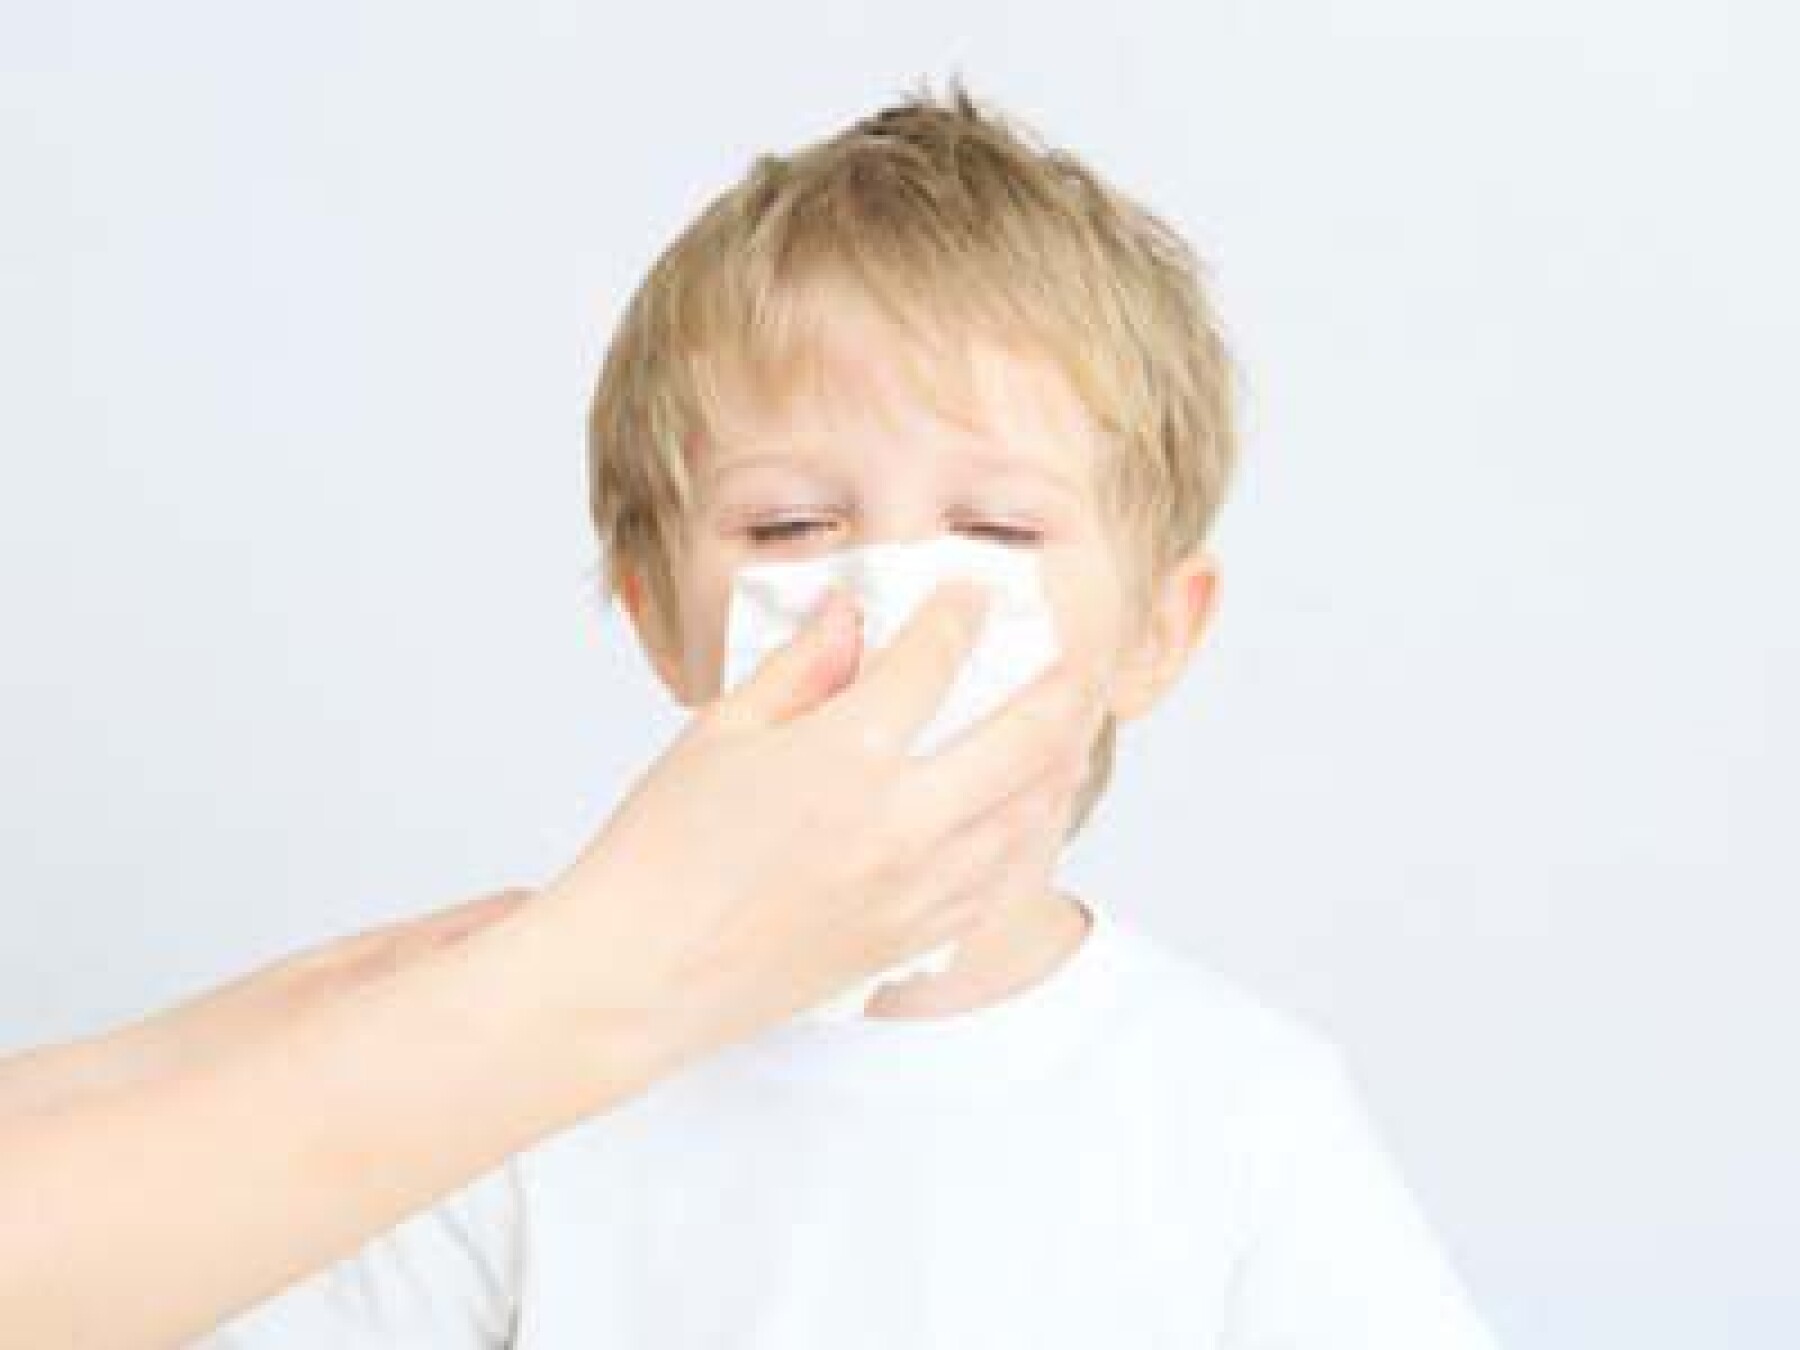 Allergie : quels signaux ?